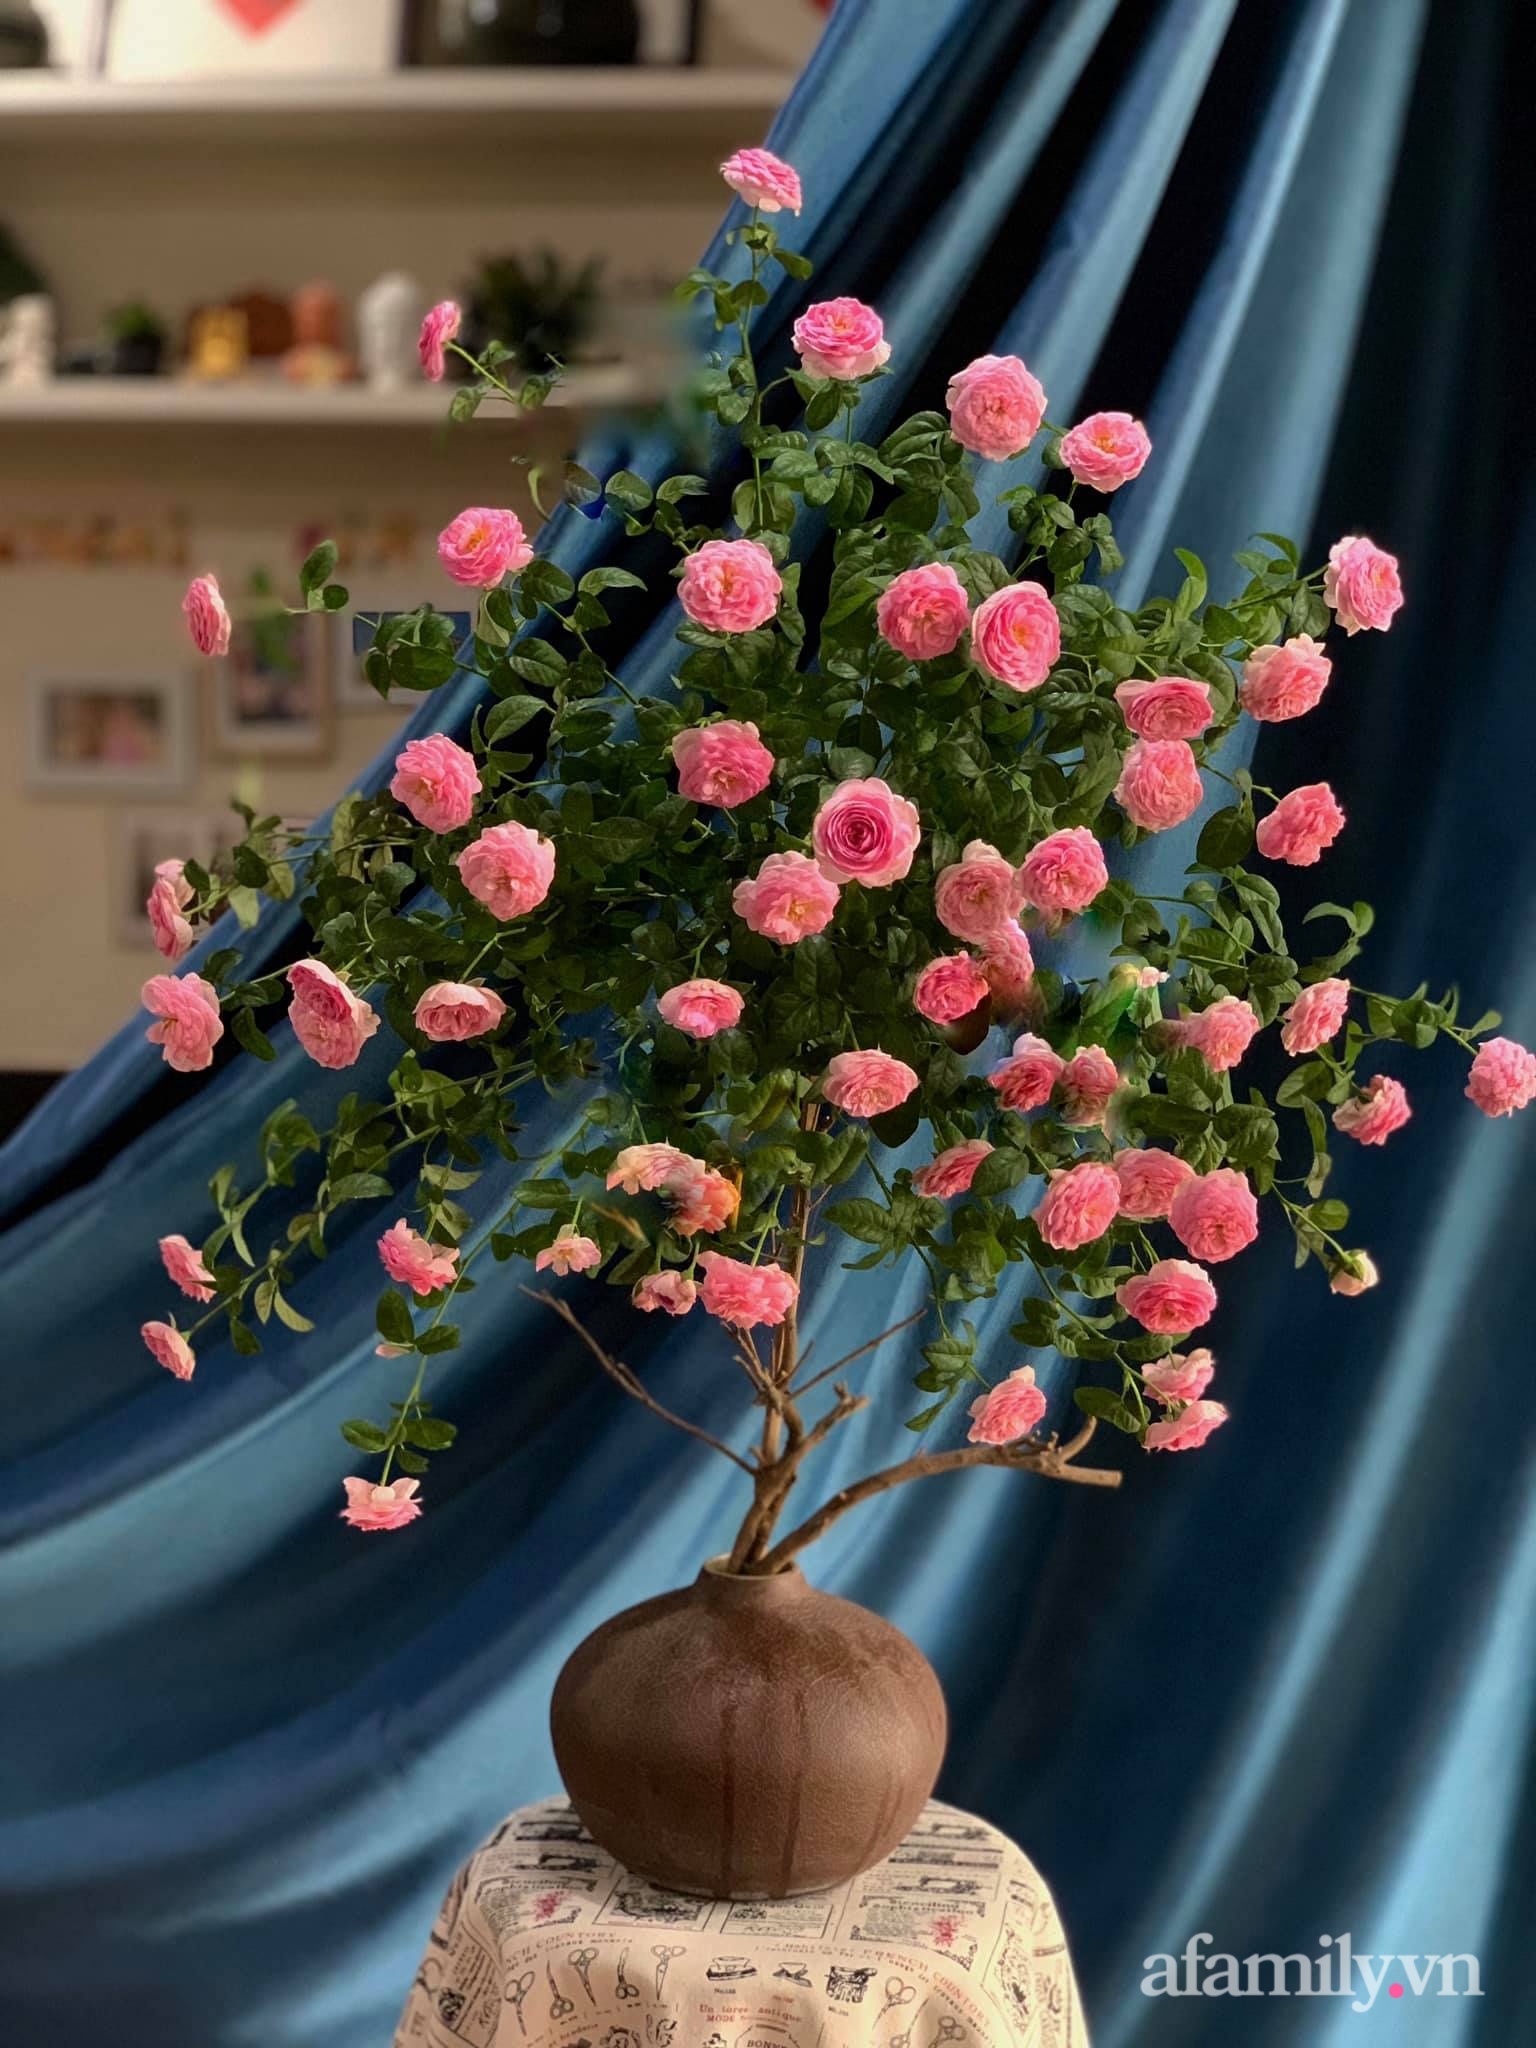 Chọn hồng cắt cành, người phụ nữ Hà Thành cắm kiểu tree rose đẹp duyên dáng không thể rời mắt - Ảnh 11.